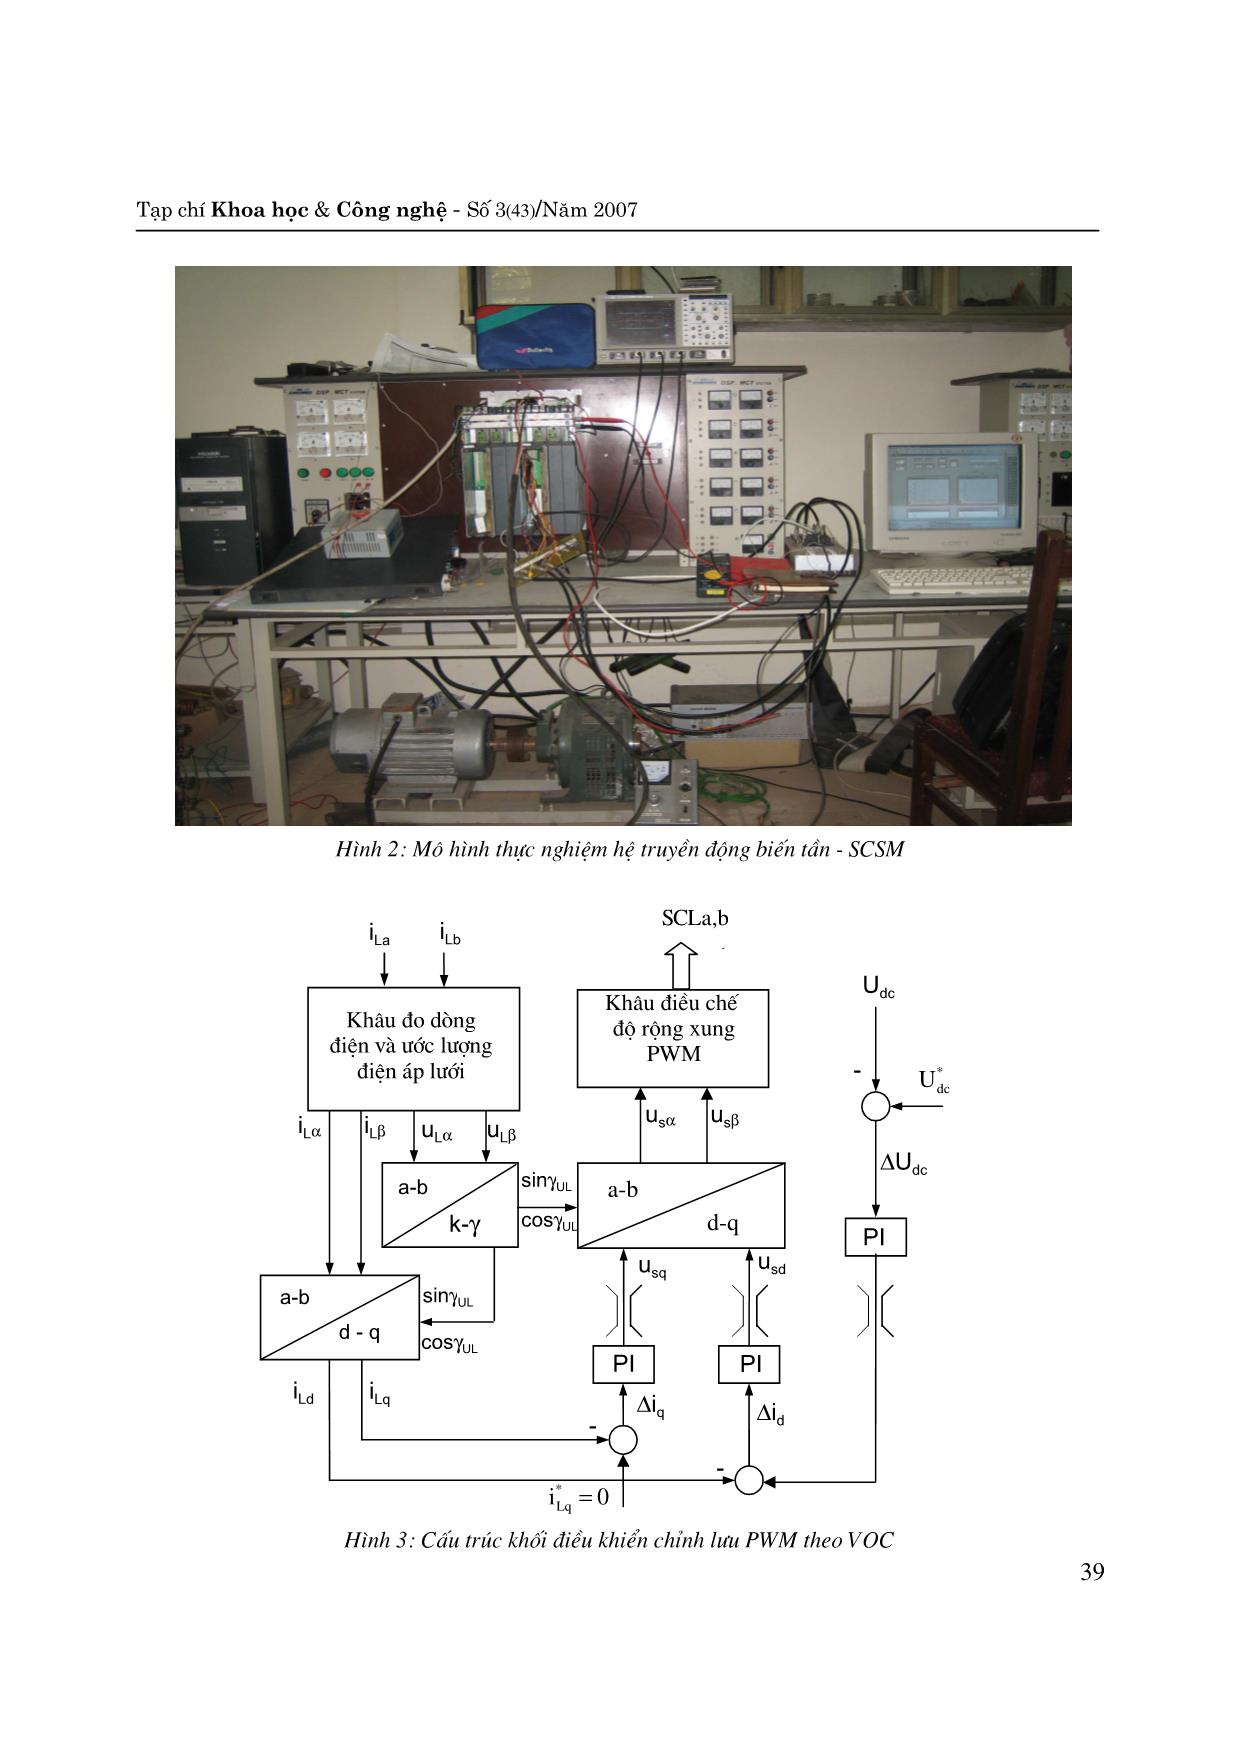 Nghiên cứu bằng thực nghiệm Hệ truyền động điện biến tần - động cơ đồng bộ kích từ nối tiếp trang 3